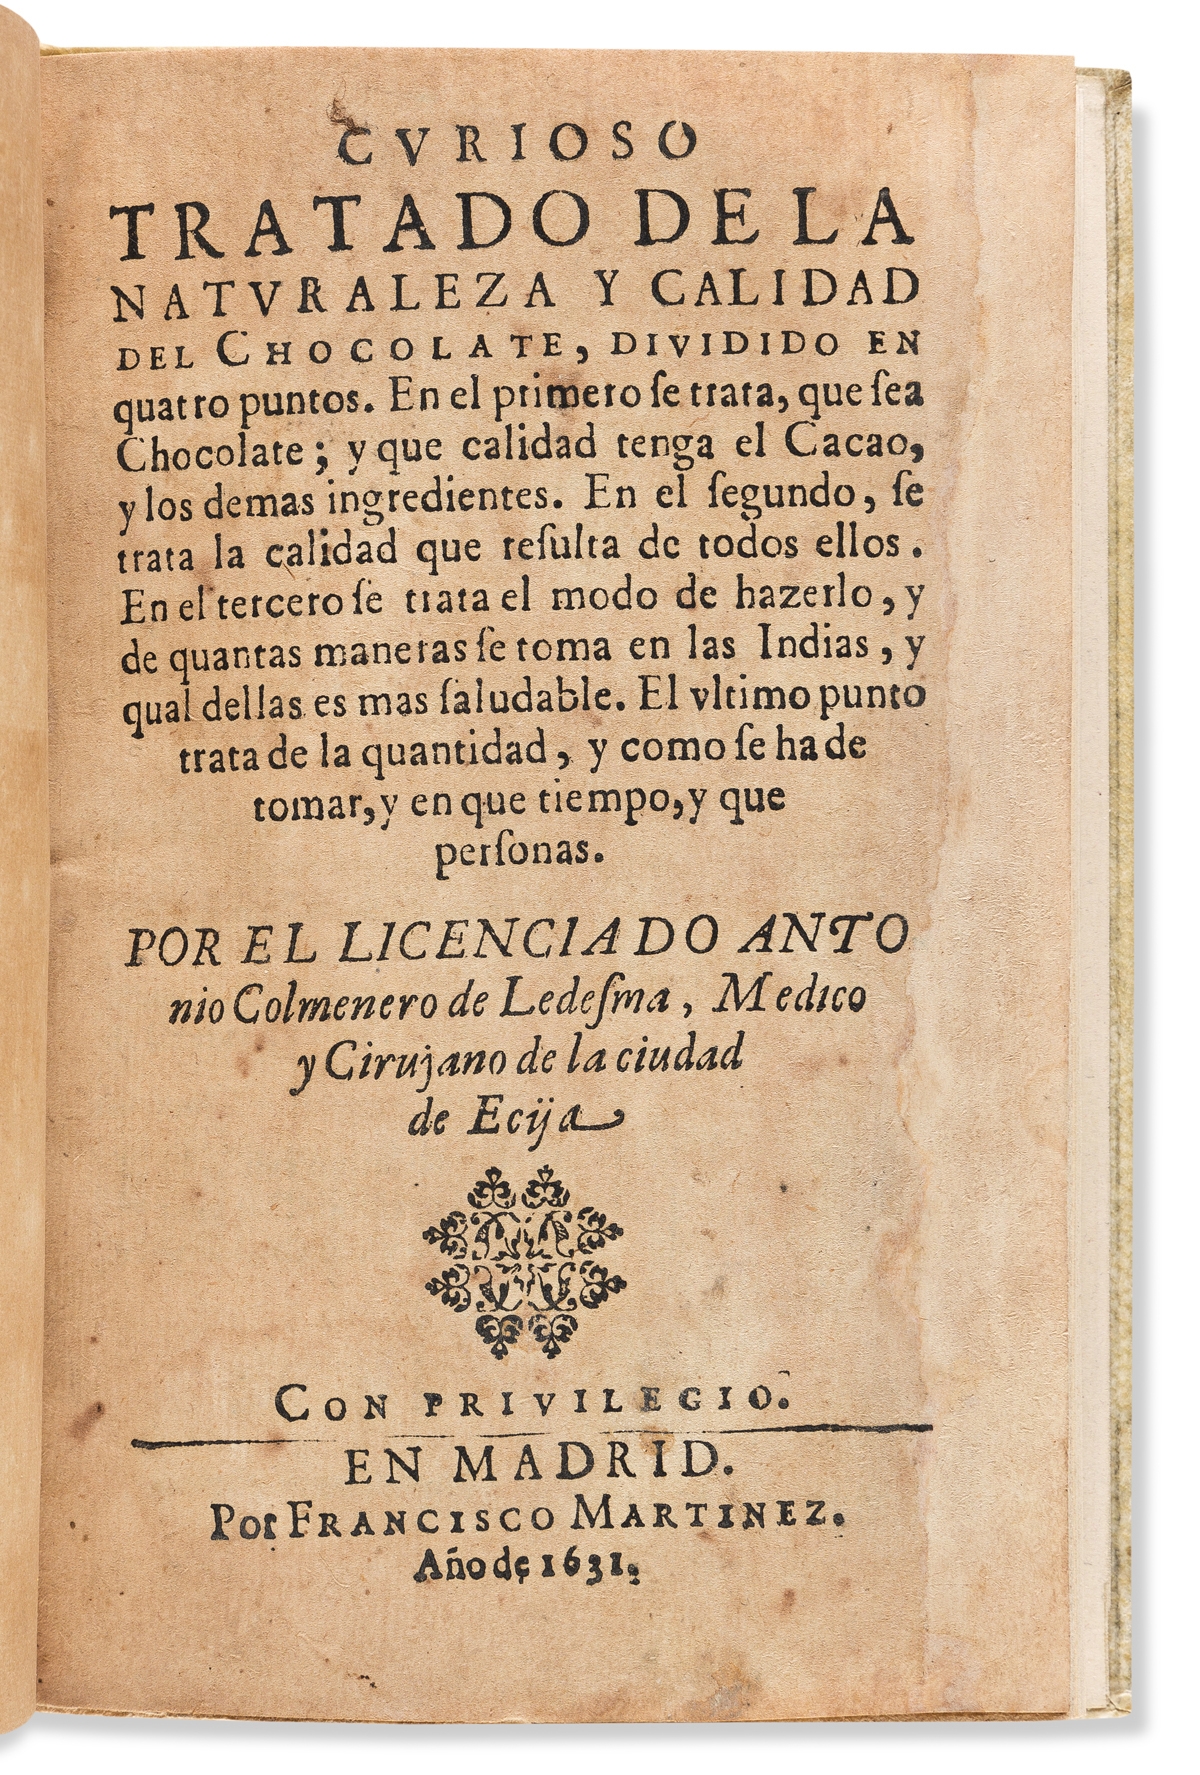 (MEXICO.) Antonio Colmenero de Ledesma. Curioso tratado de la naturaleza y calidad del Chocolate.